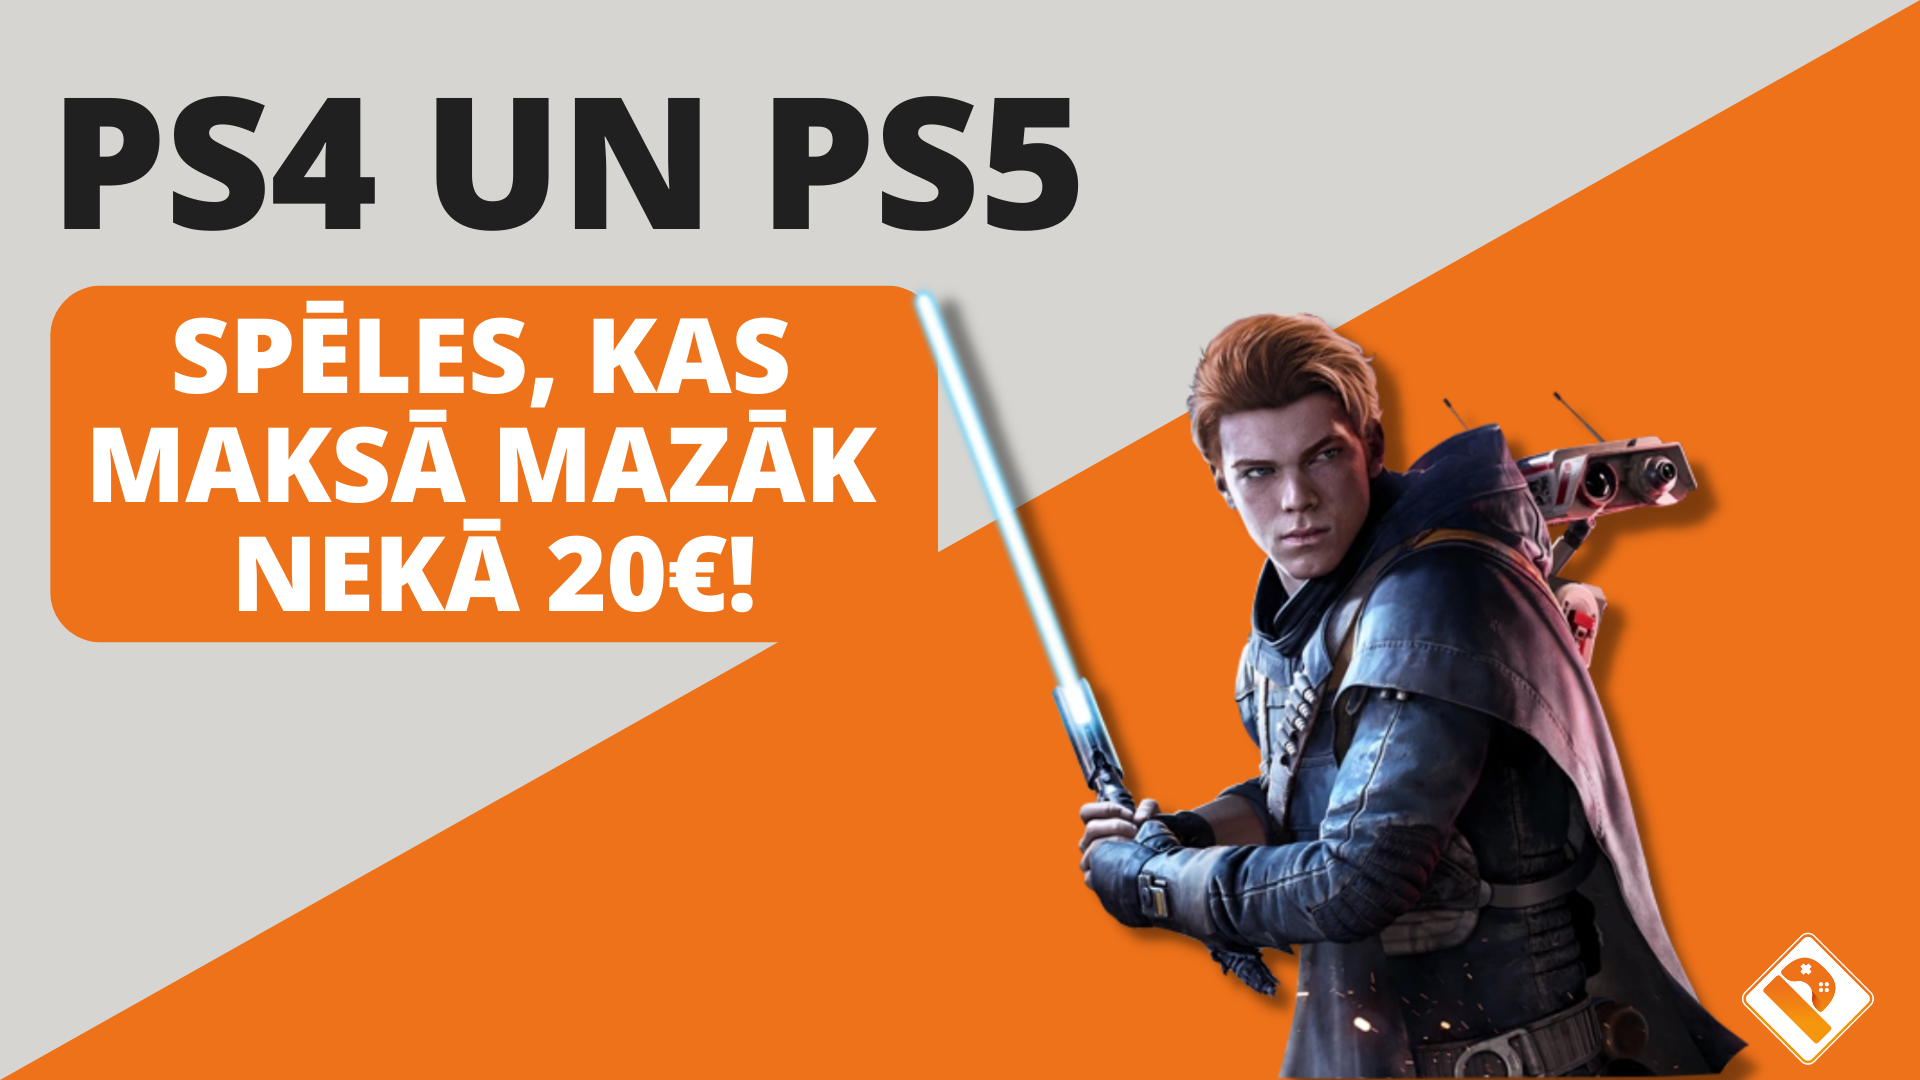 PS4 un PS5 spēles, kas maksā mazāk nekā 20€!